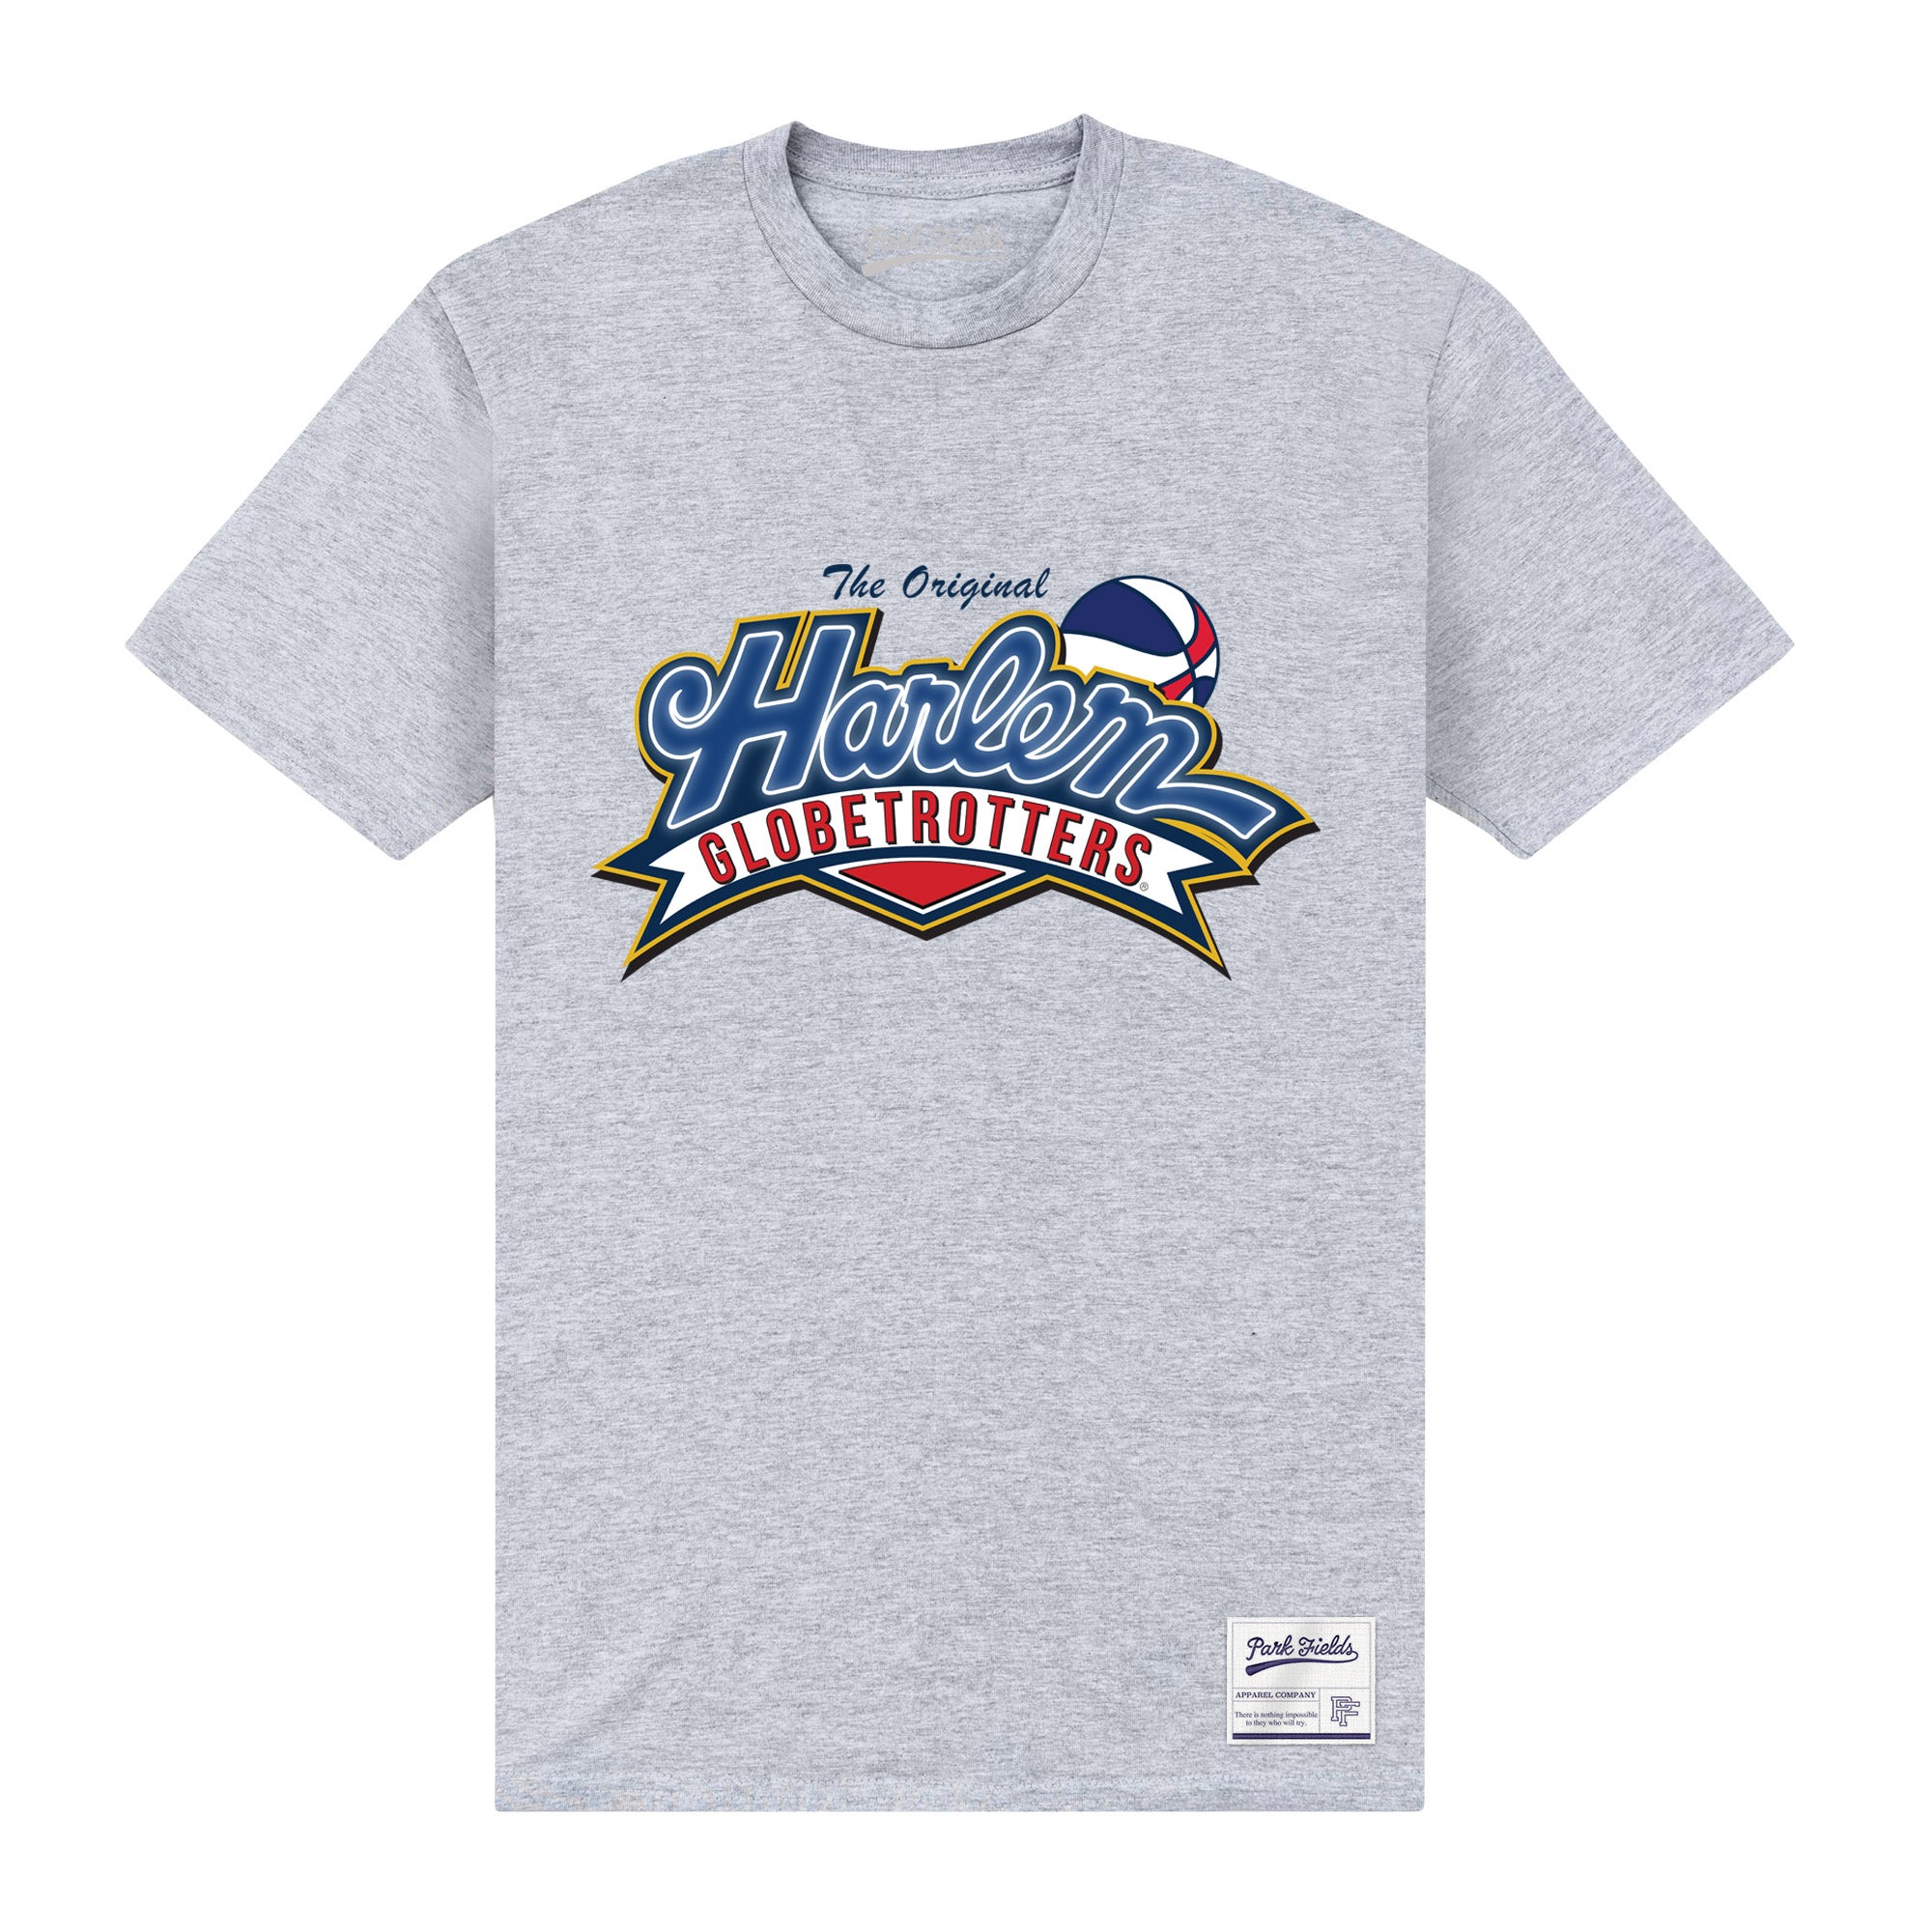 Harlem Globetrotters USA T-Shirt